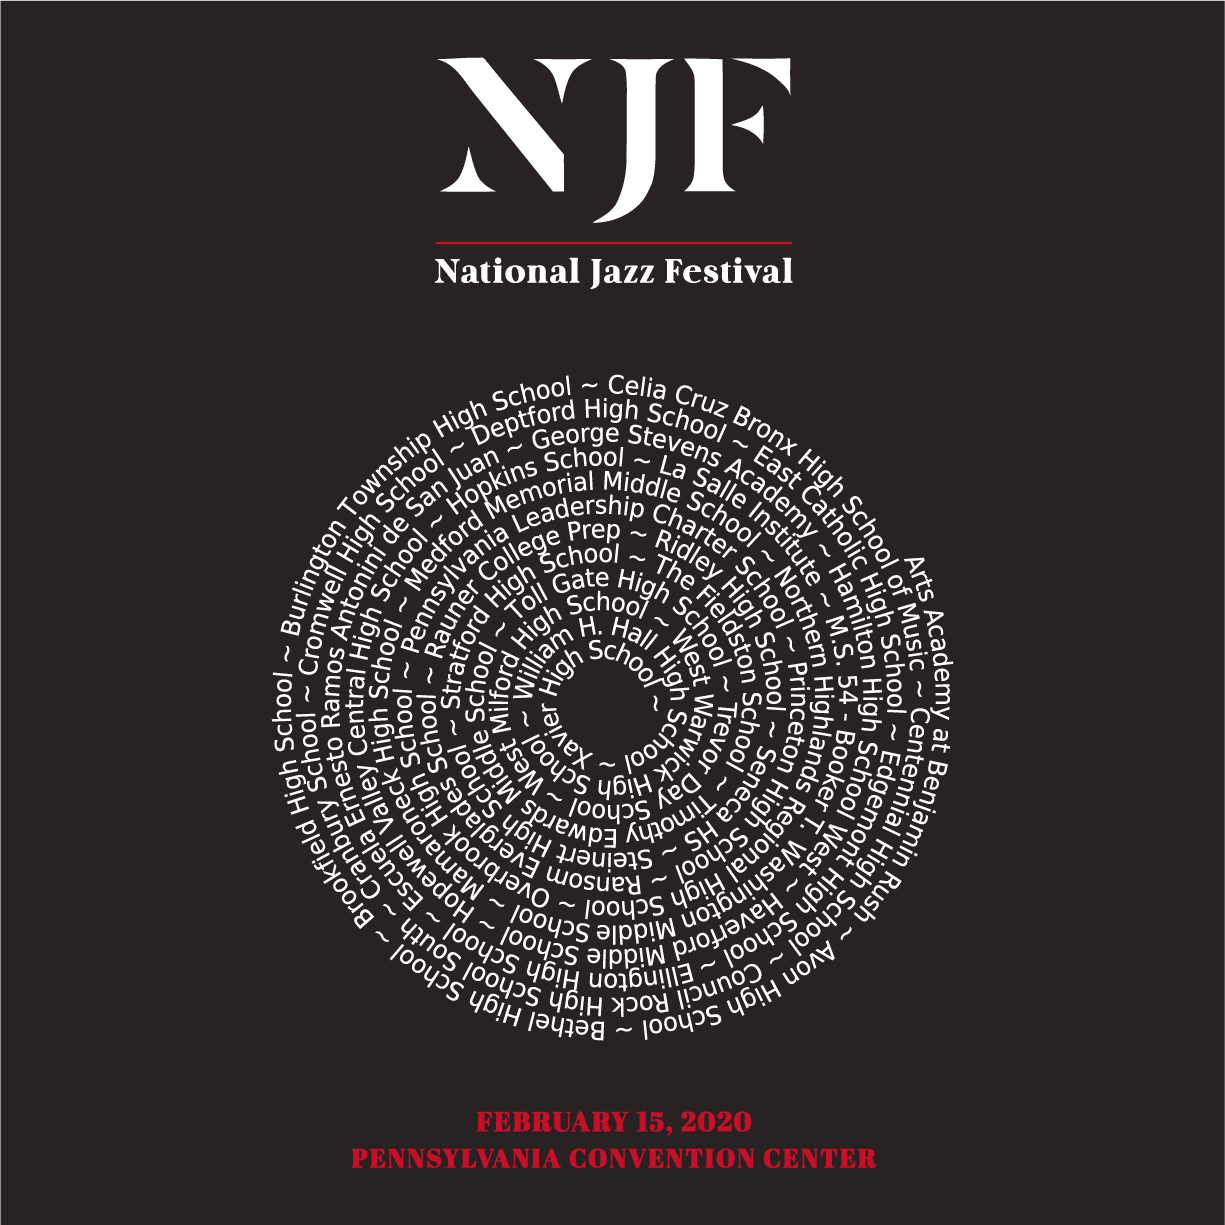 National Jazz Festival shirt design - zoomed